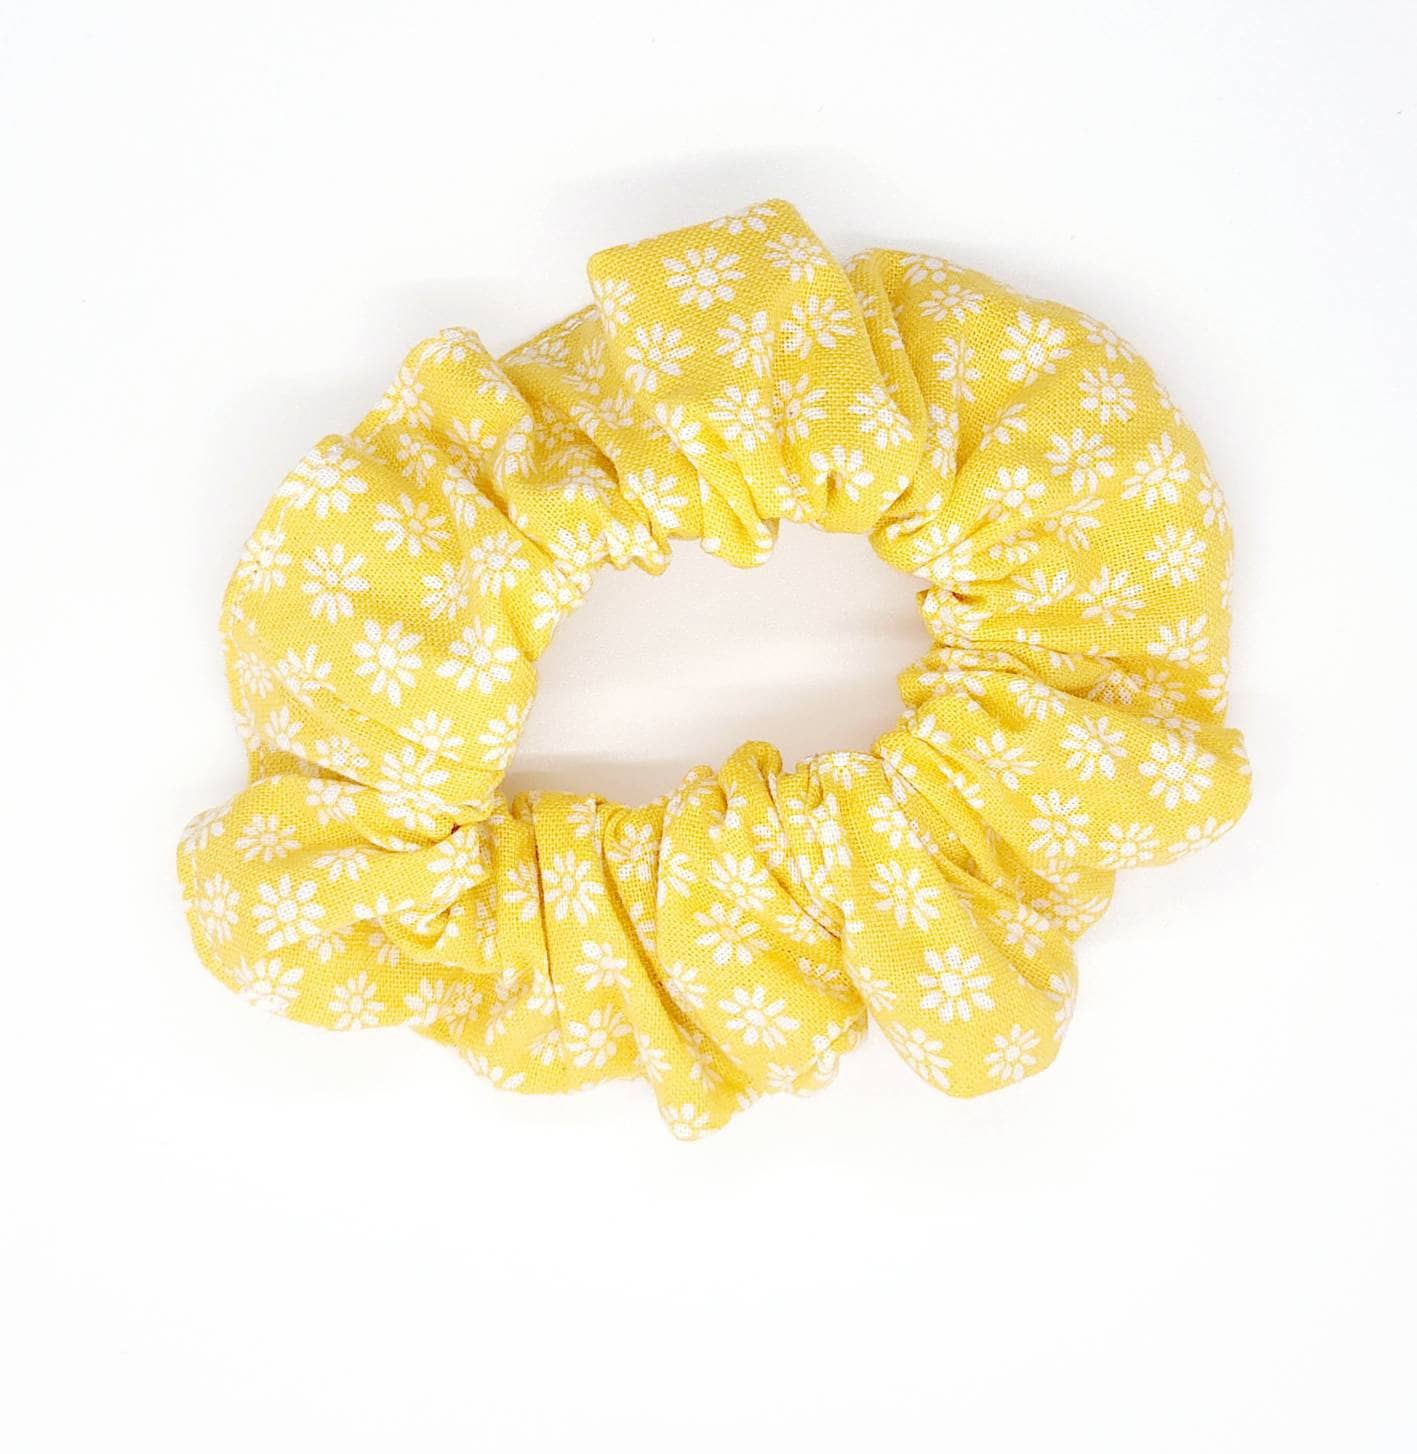 Scrunchie Flower Scrunchie Yellow Scrunchie 90s Hair - Etsy